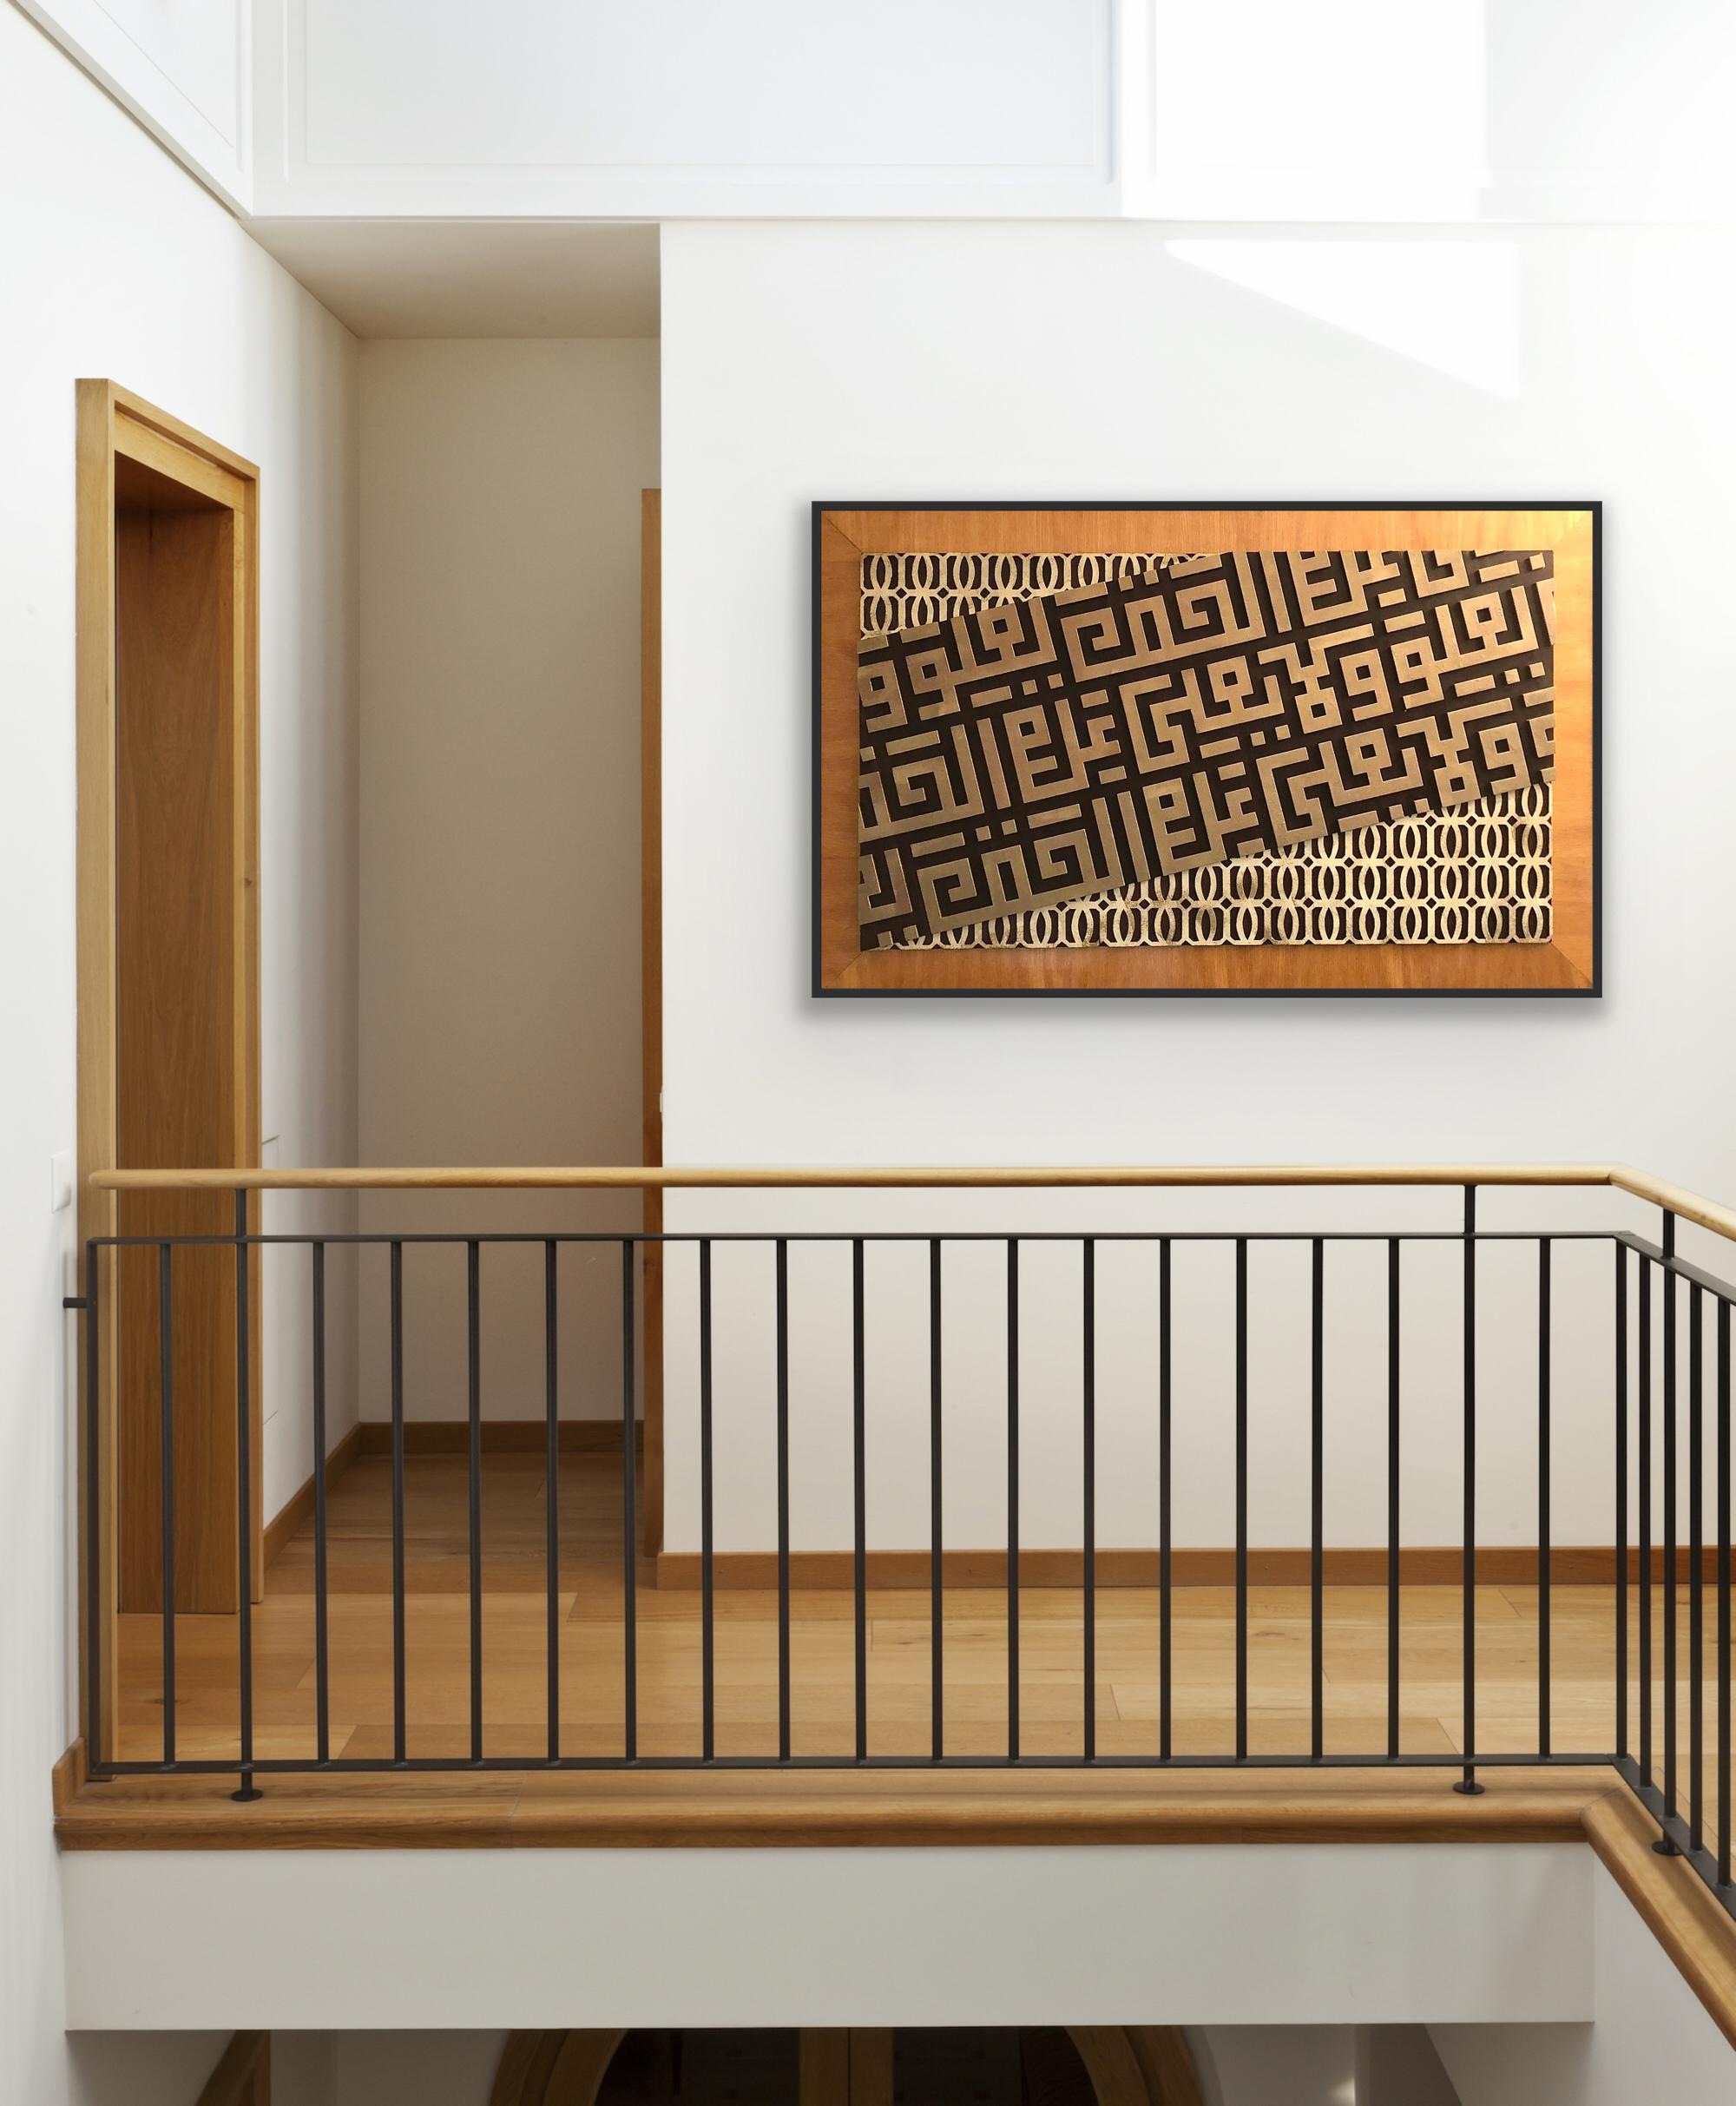 Atemberaubende geschnitzte abstrakte Kalligraphie Kunstwerk auf Holzplatte von Bahrain Künstler Ali Al Mahmeed, signiert verso. Größe: 75 x 122 cm (gerahmt), 29,5 x 48 Zoll.

Ali Al Mahmeed hat über 30 Jahre lang eine Karriere als Künstler gemacht